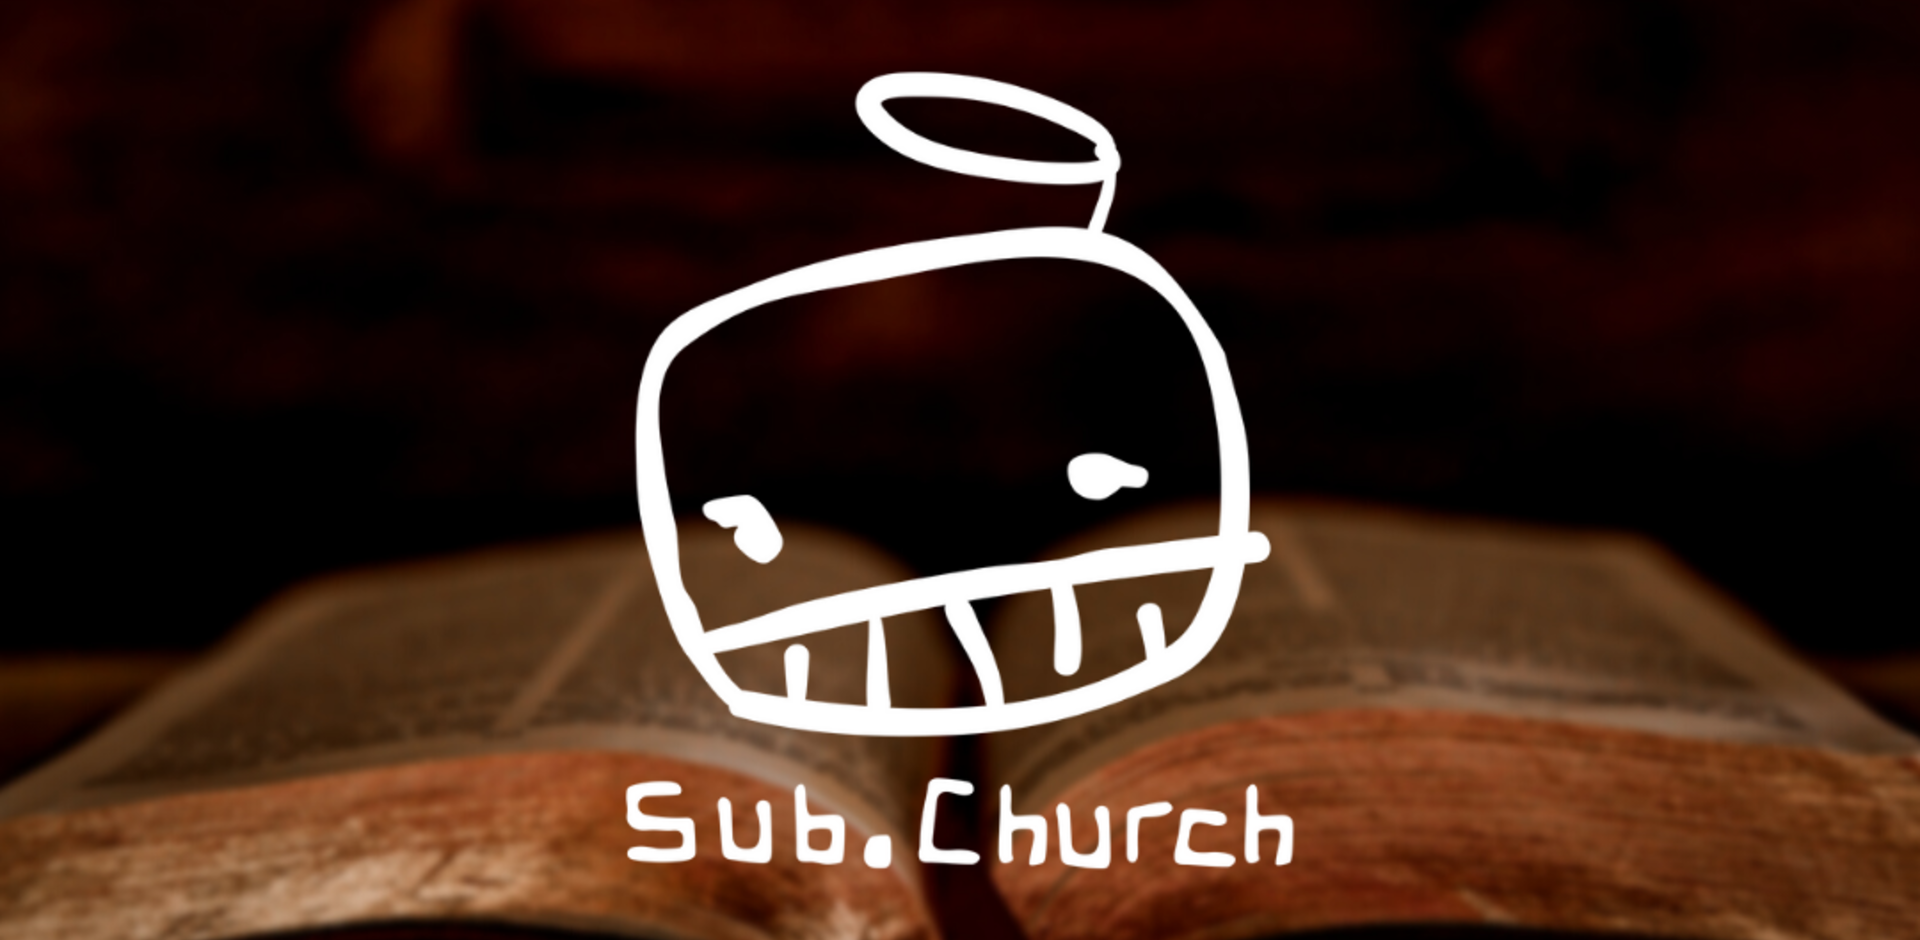 Sub church